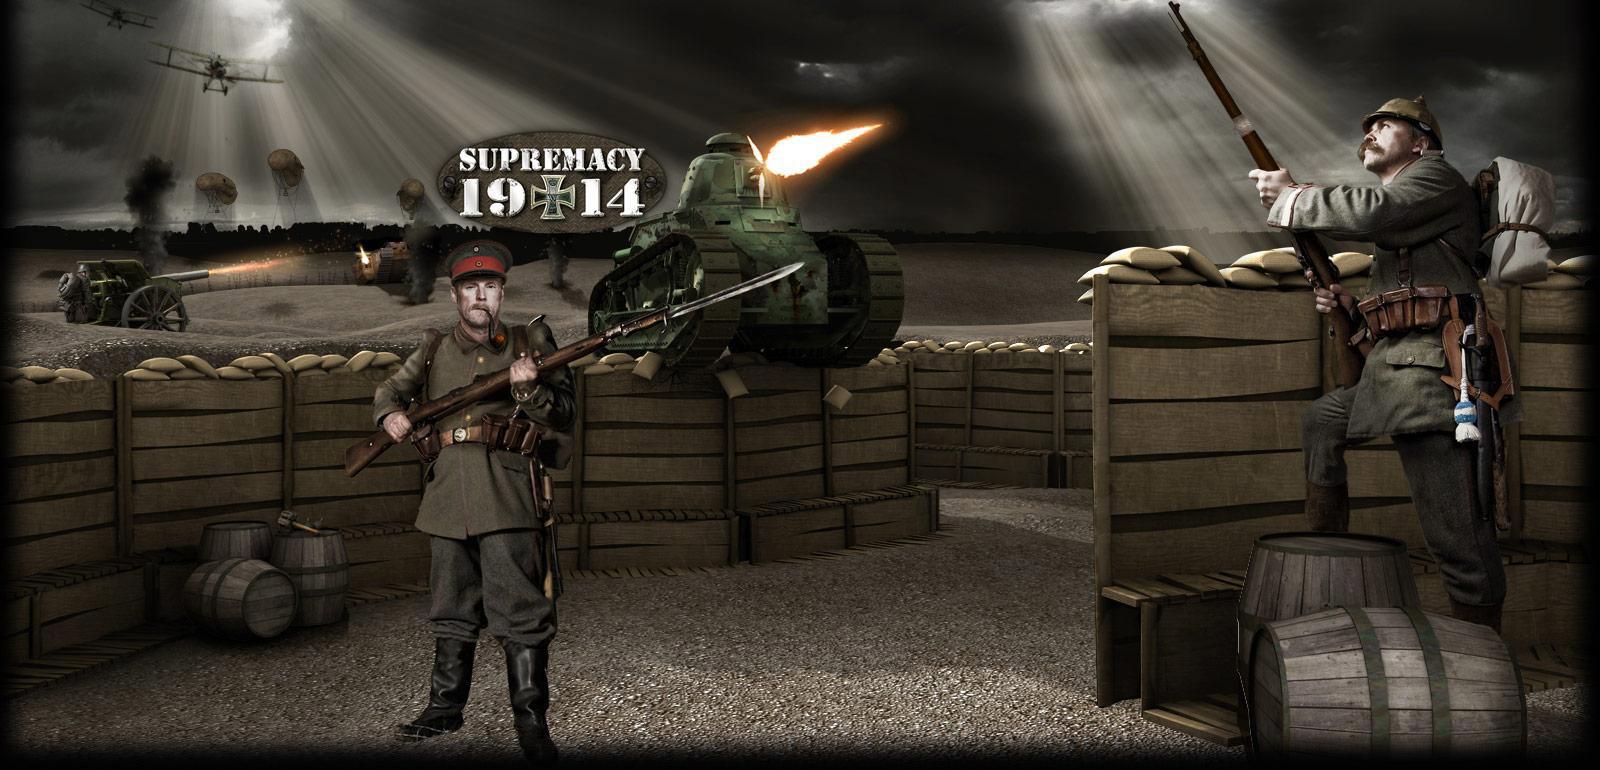 Juego De Guerra Online Supremacy 1914 Juegos Gratis